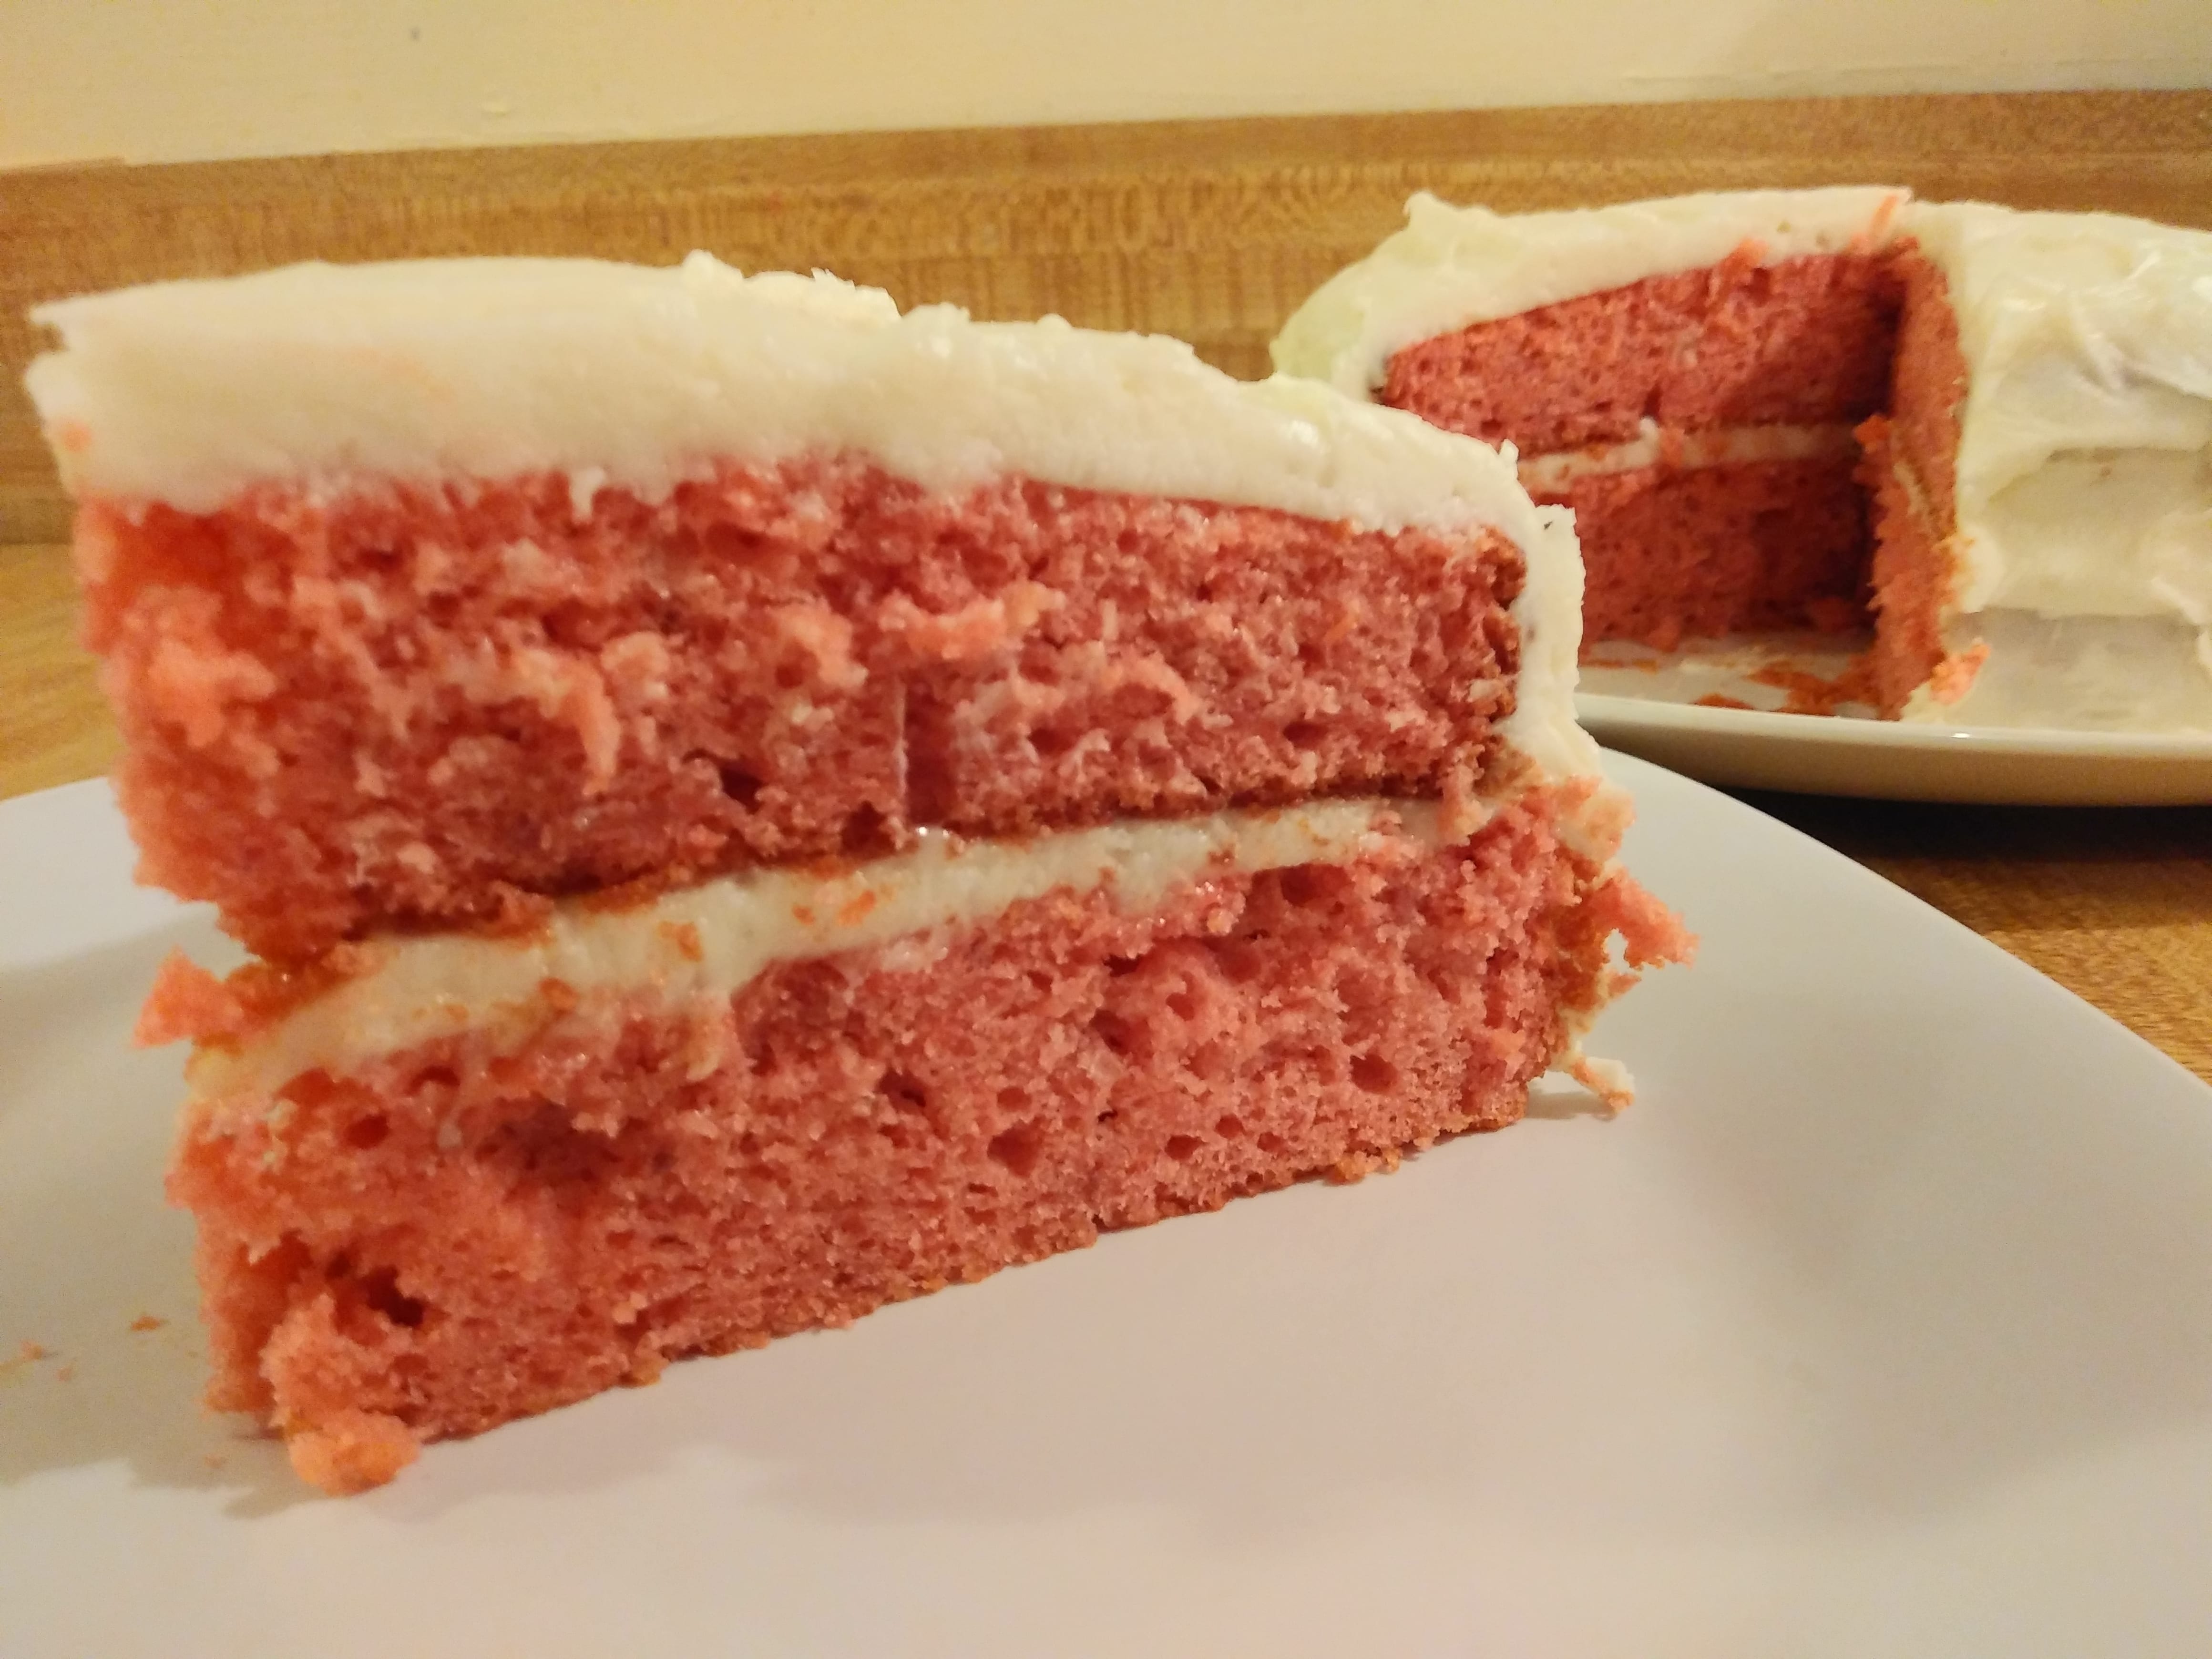 strawberry jello cake recipe terbaru